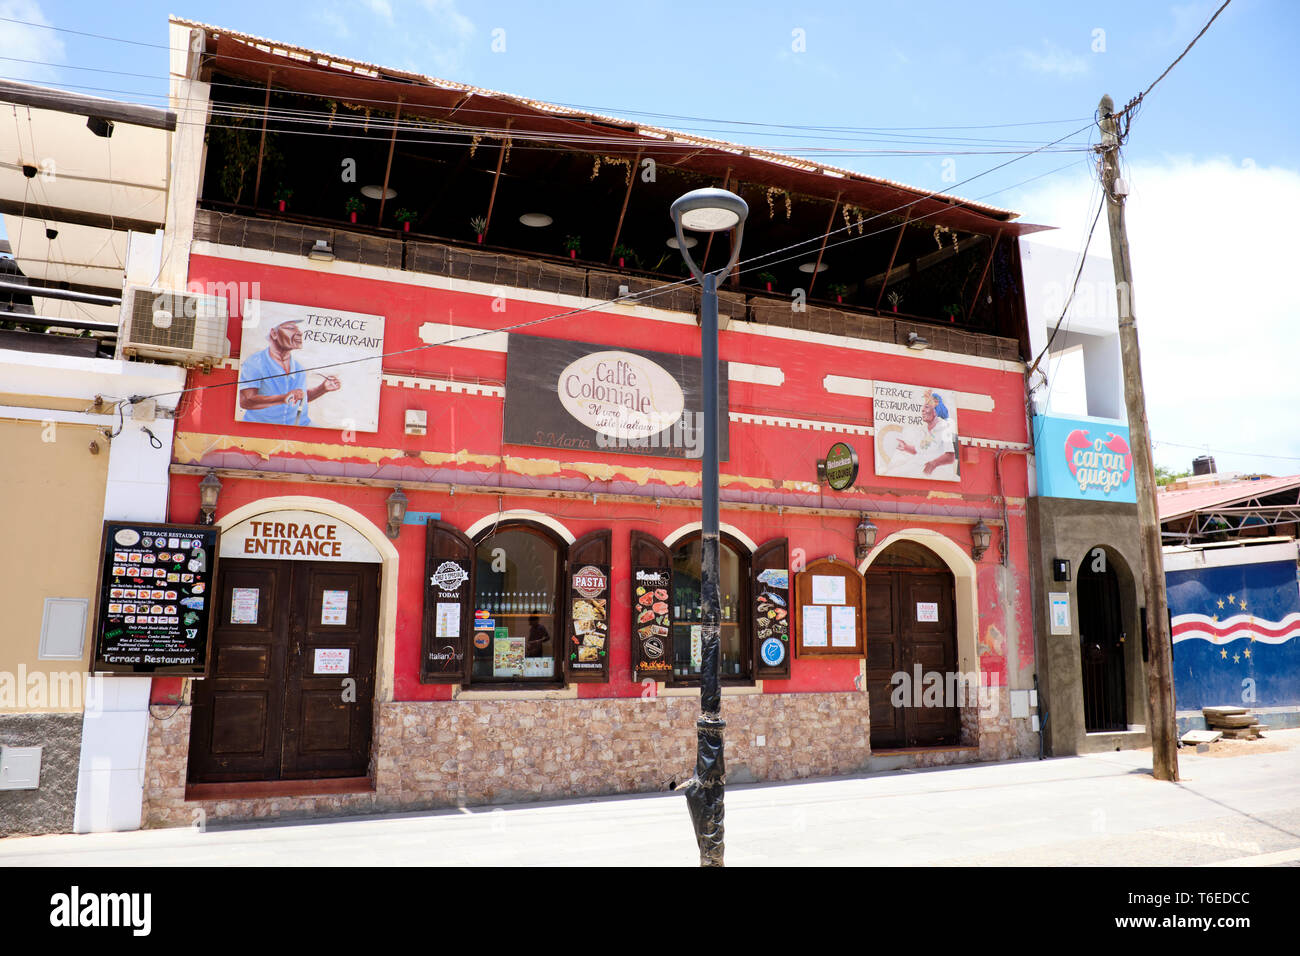 Caffe Restaurant Terrasse ou coloniale, Praca Central, Santa Maria, île de Sal, Cap-Vert, Afrique Banque D'Images